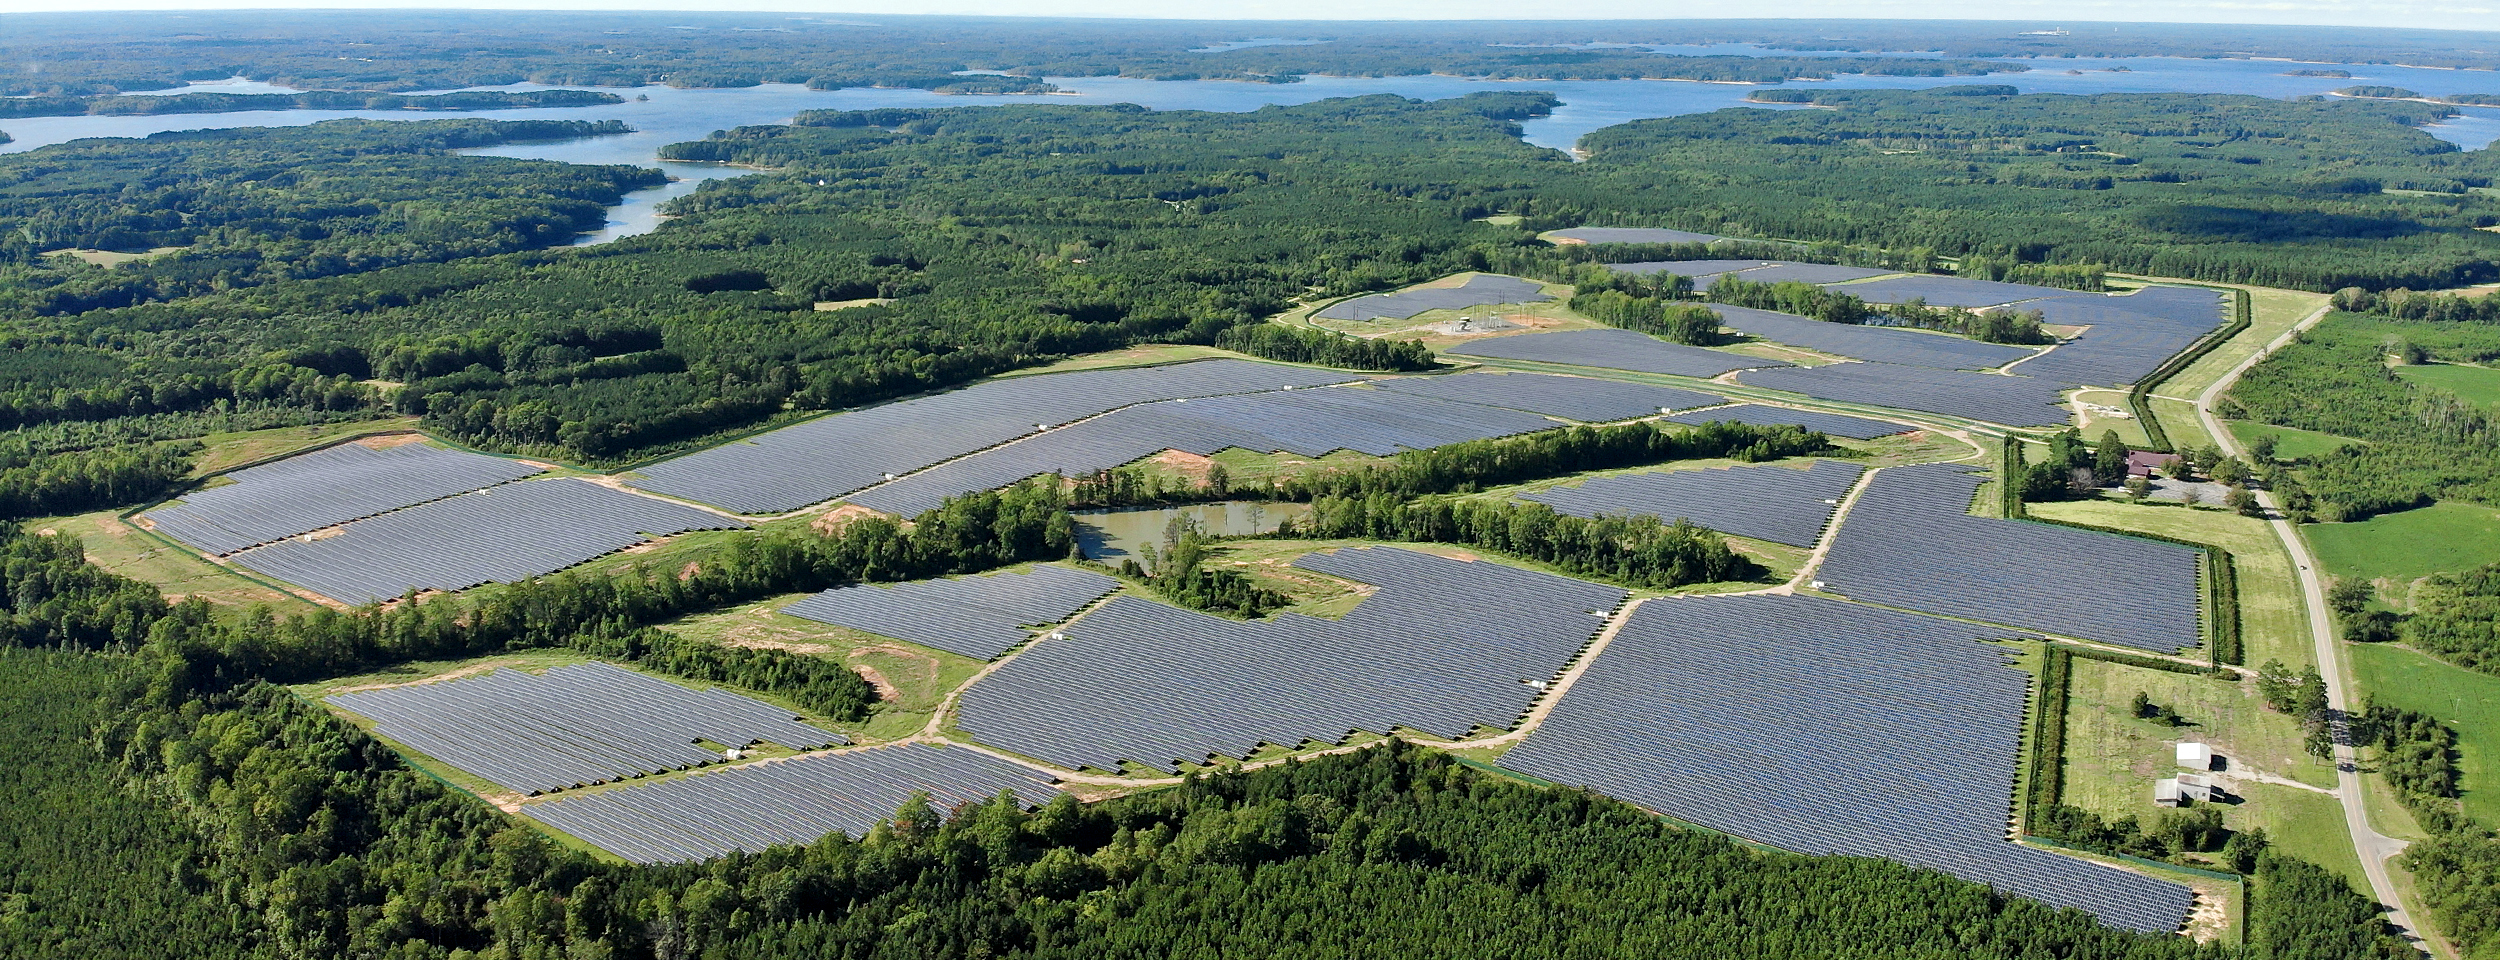 A nearby North Carolina Solar Facility